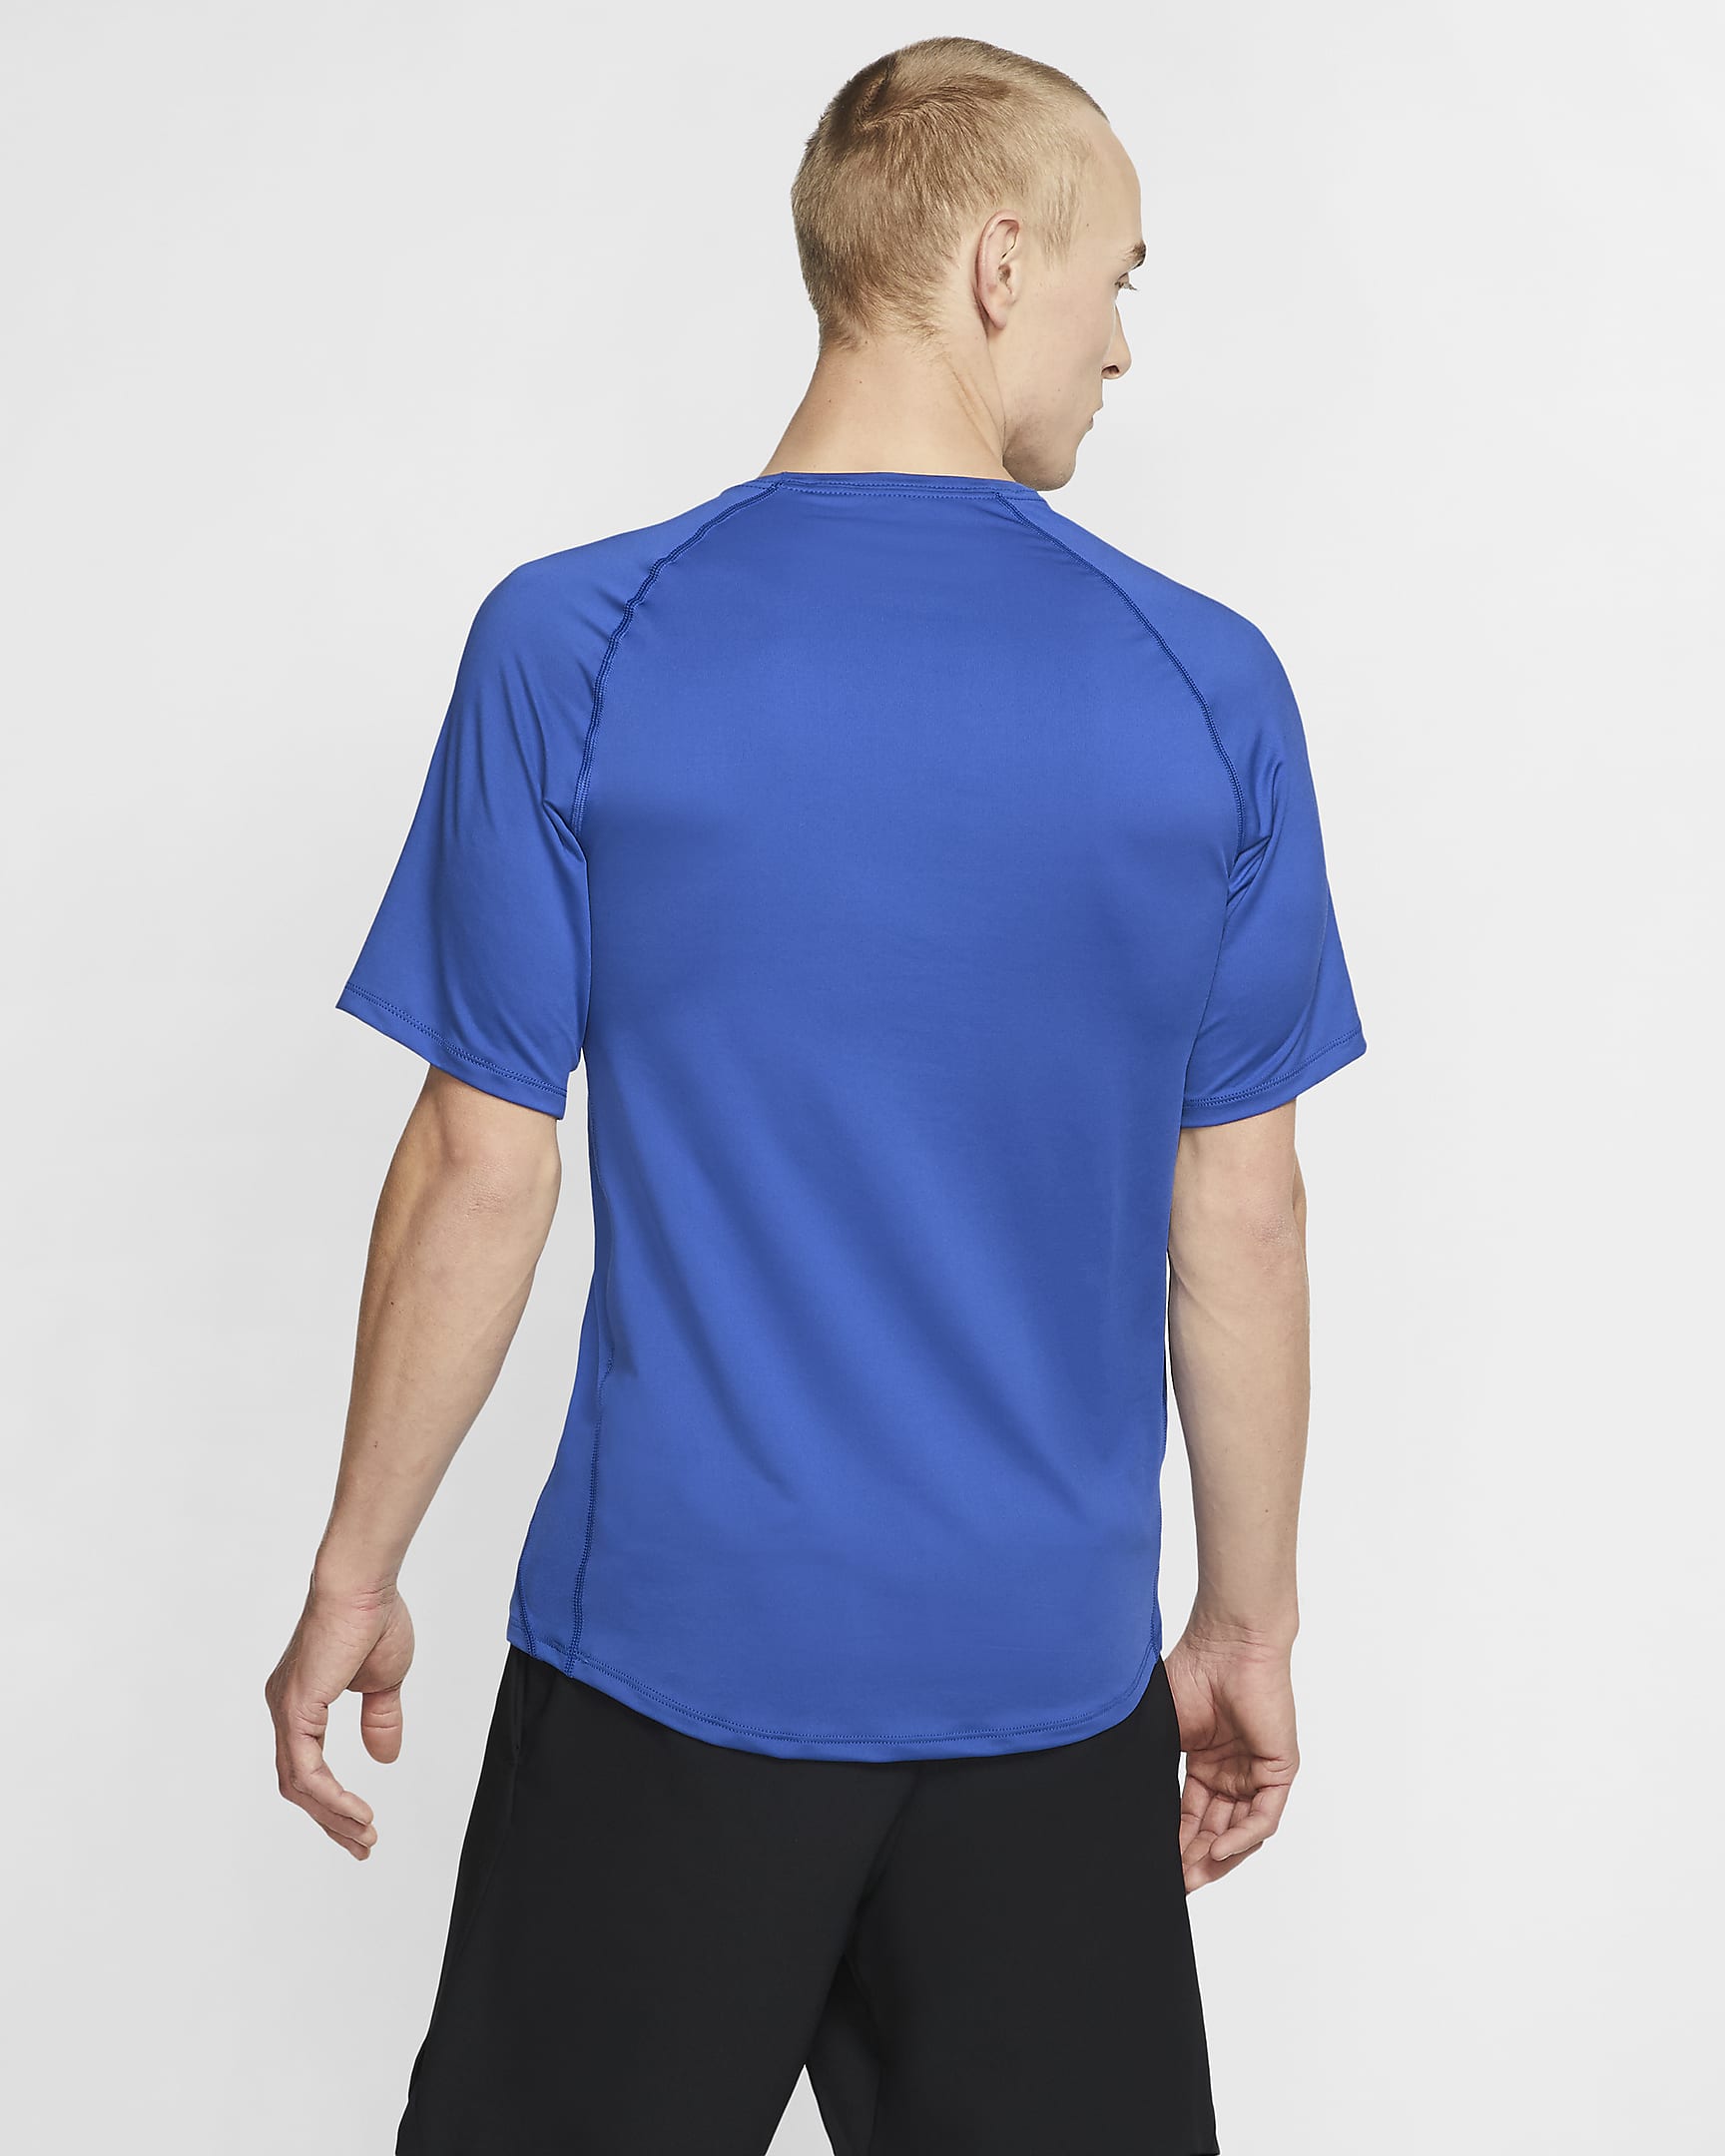 Nike Pro Men's Short-Sleeve Top. Nike.com